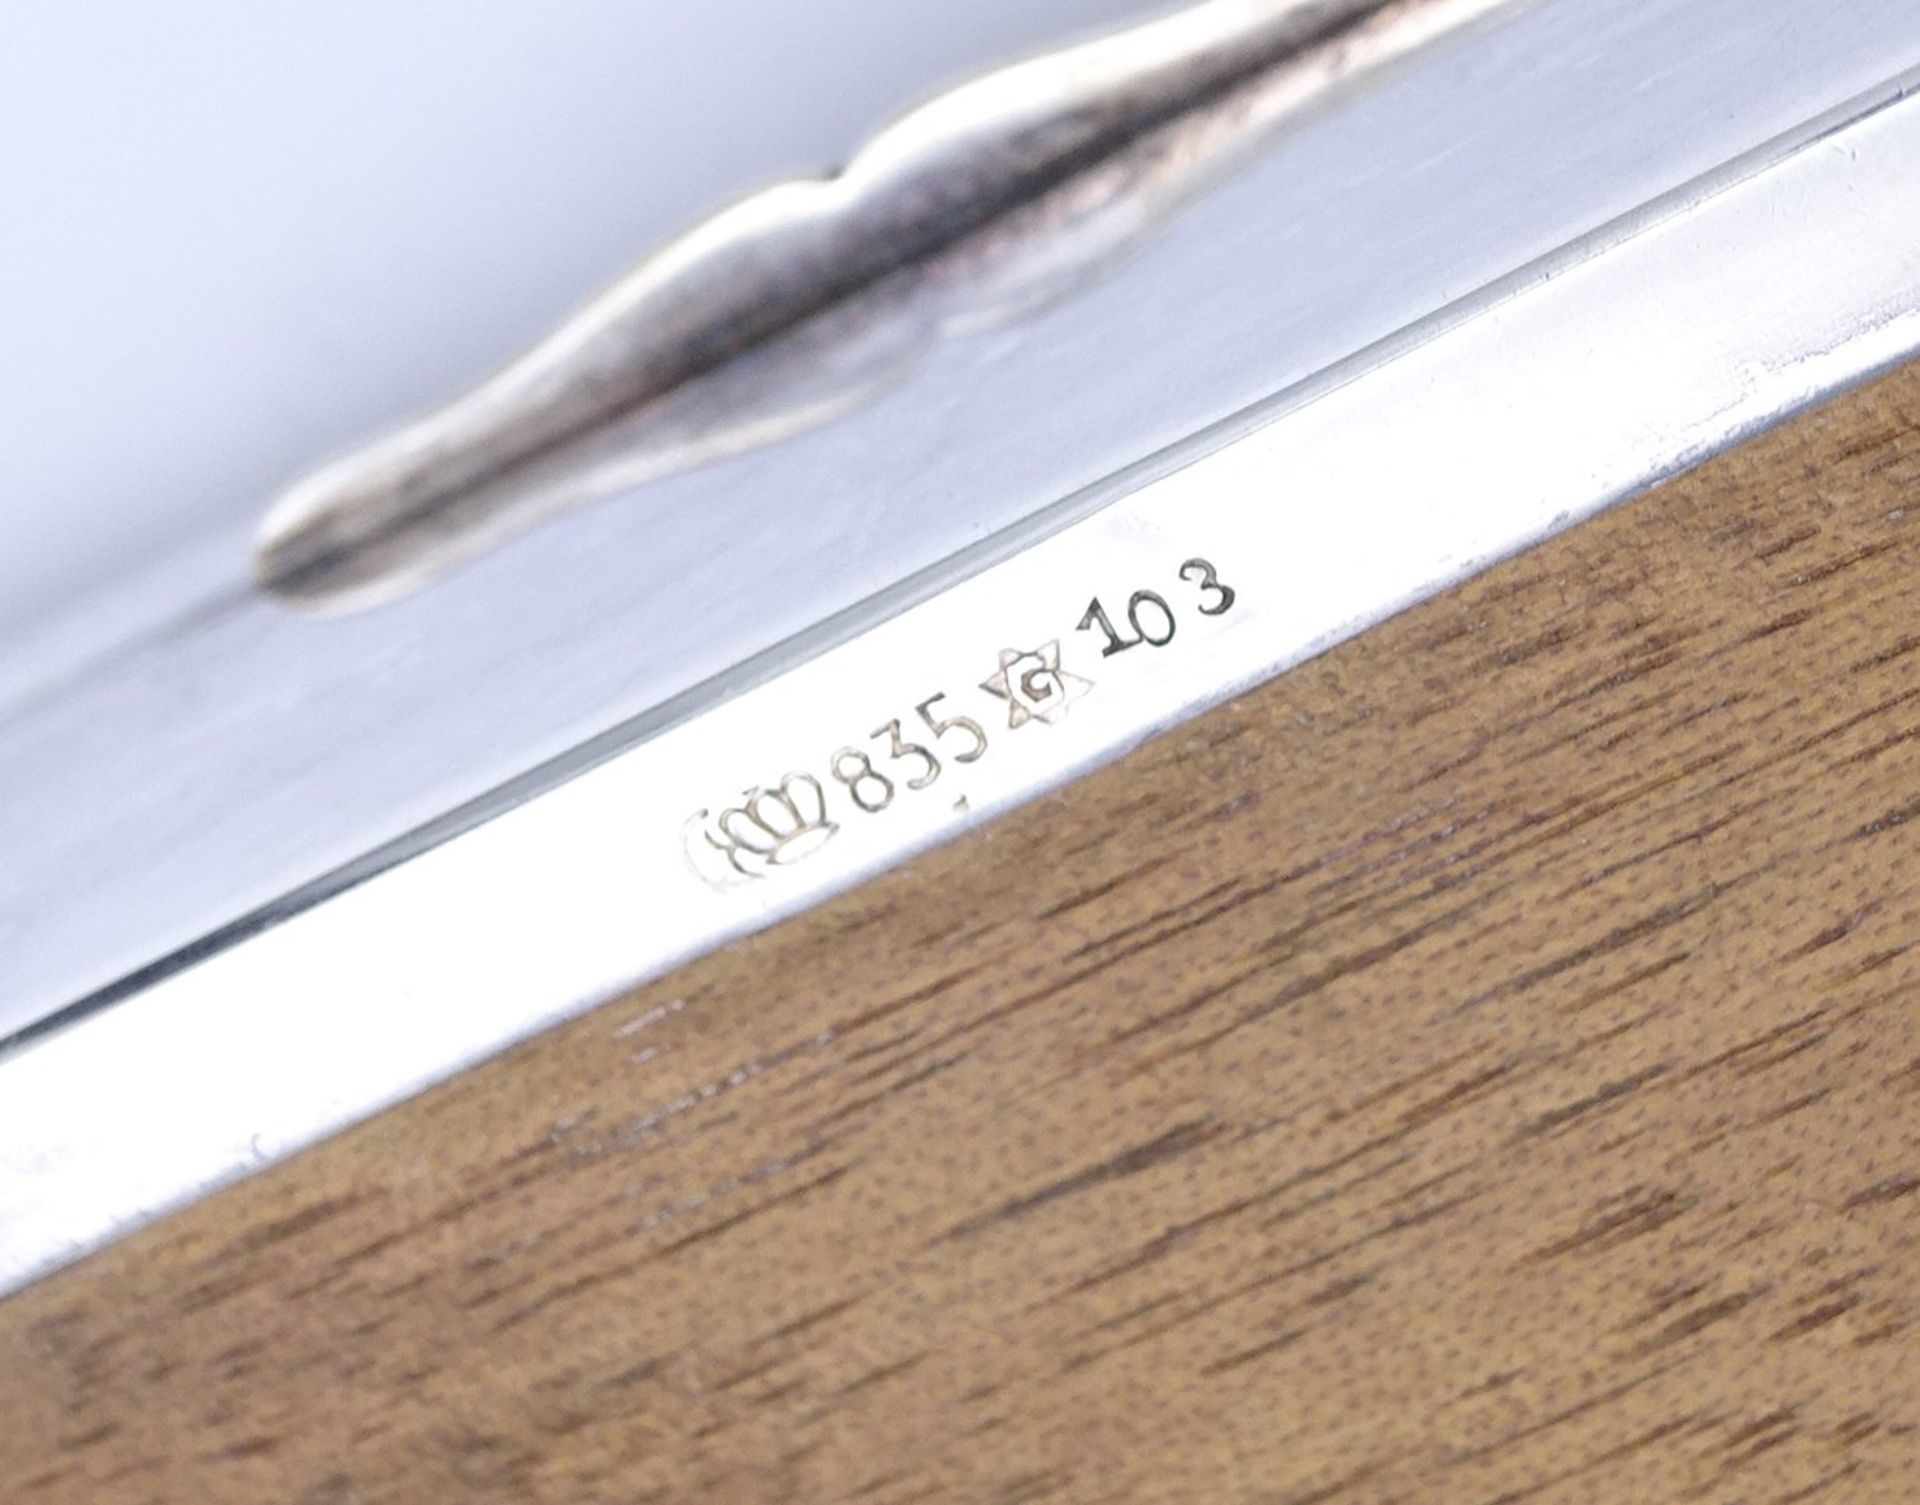 Deckeldose Silber 0.835, Zigarrenschachtel?, H. 3,5cm, 10 x 8cm, min. Dellen, 136g. - Bild 4 aus 6